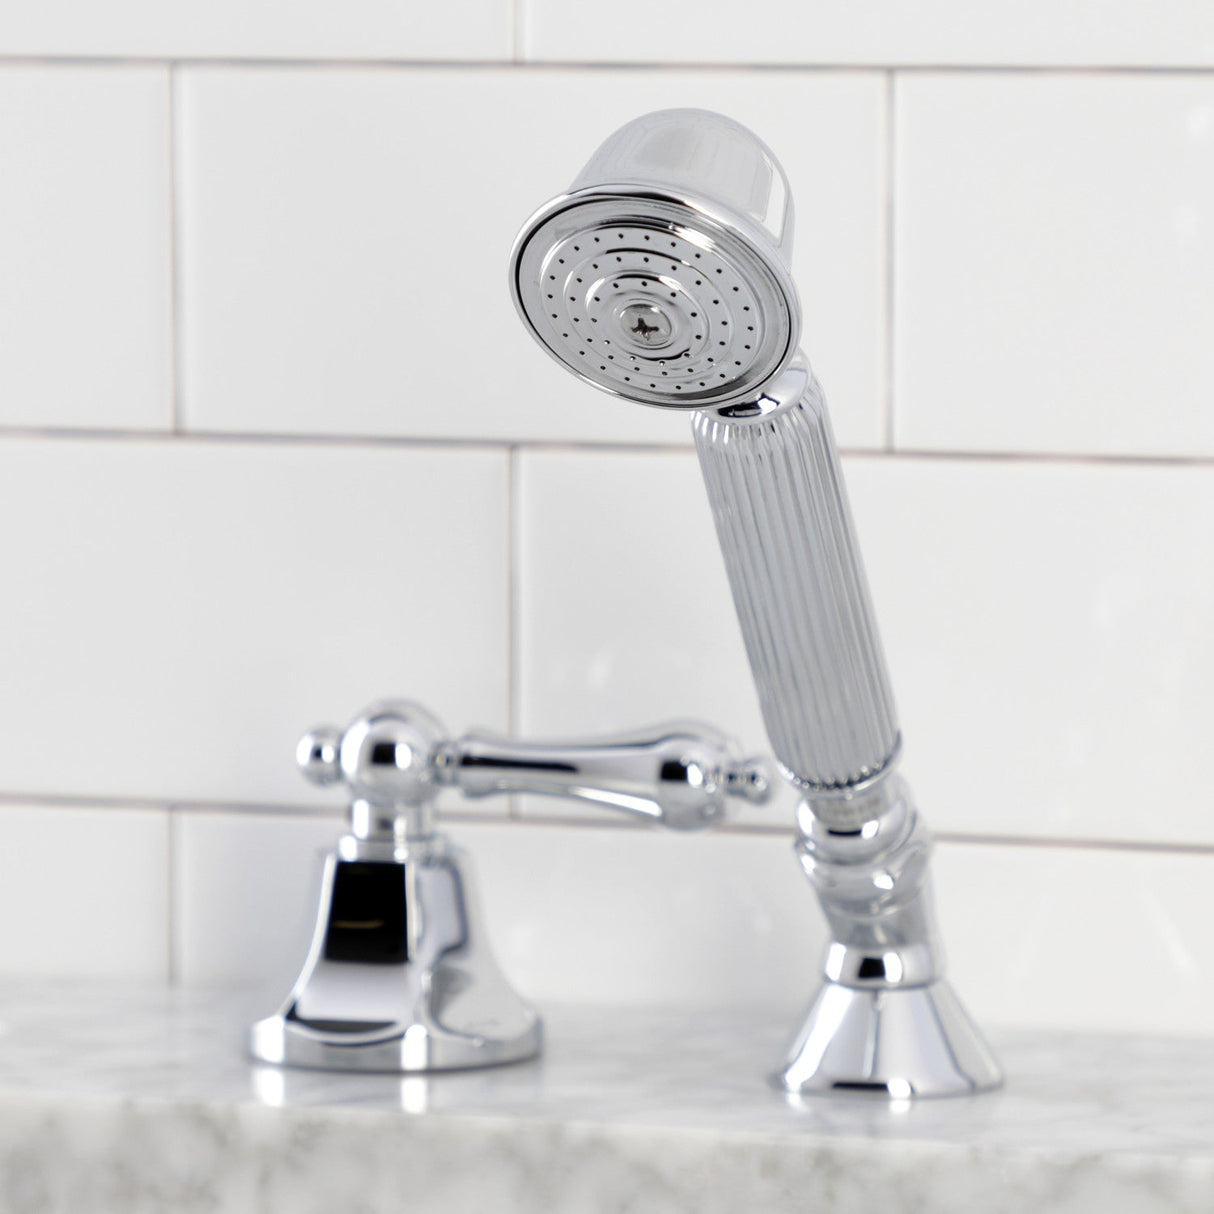 KSK4301ALTR Deck Mount Hand Shower with Diverter for Roman Tub Faucet, Polished Chrome